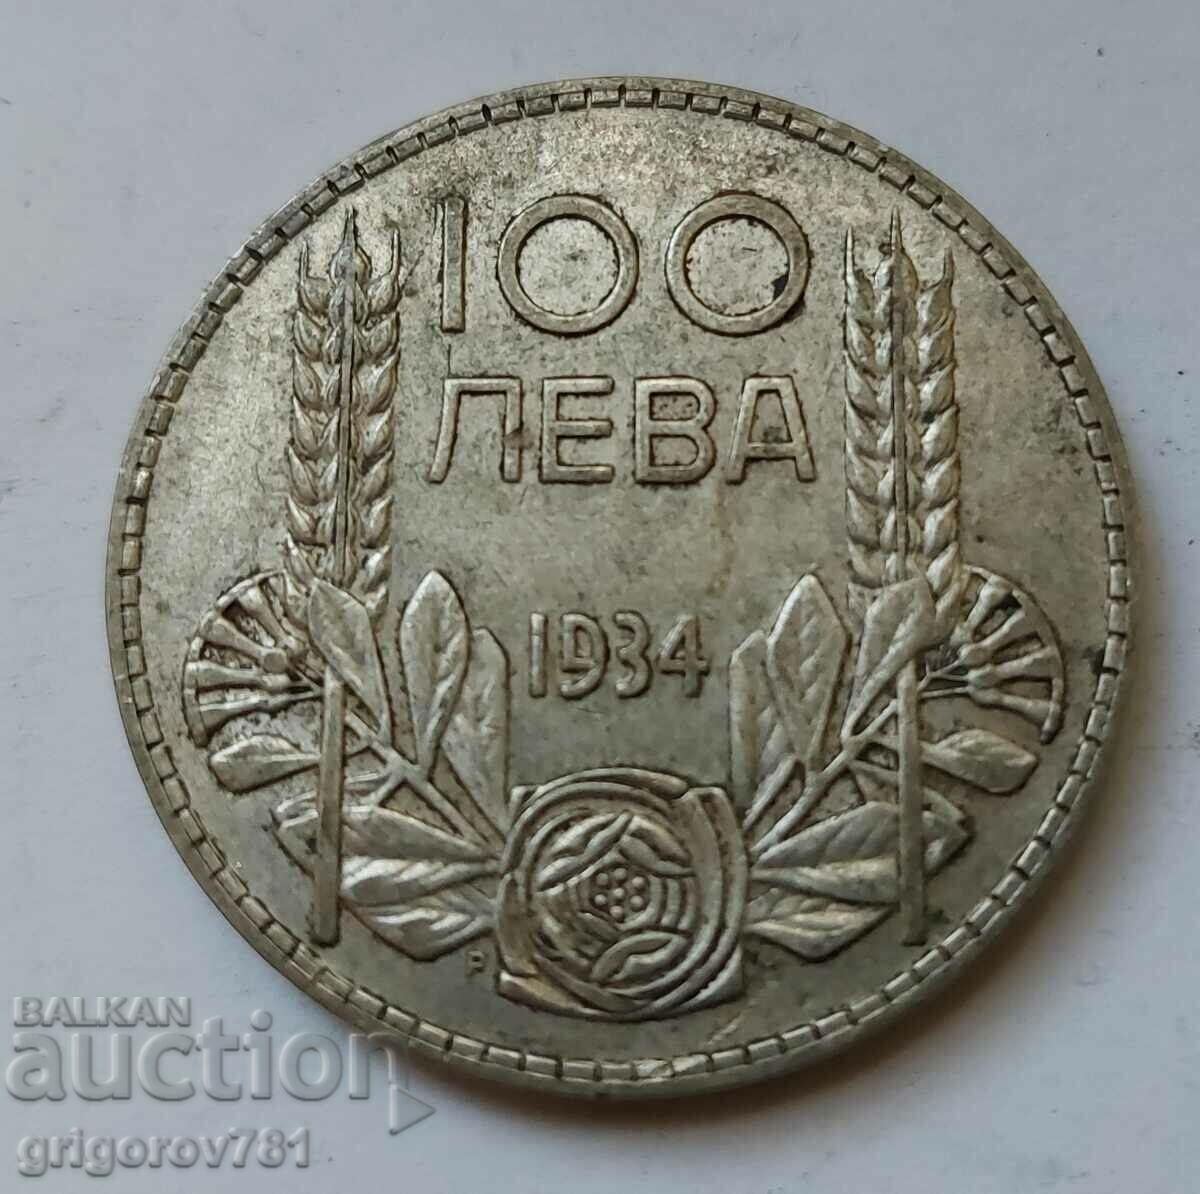 100 leva silver Bulgaria 1934 - silver coin #117